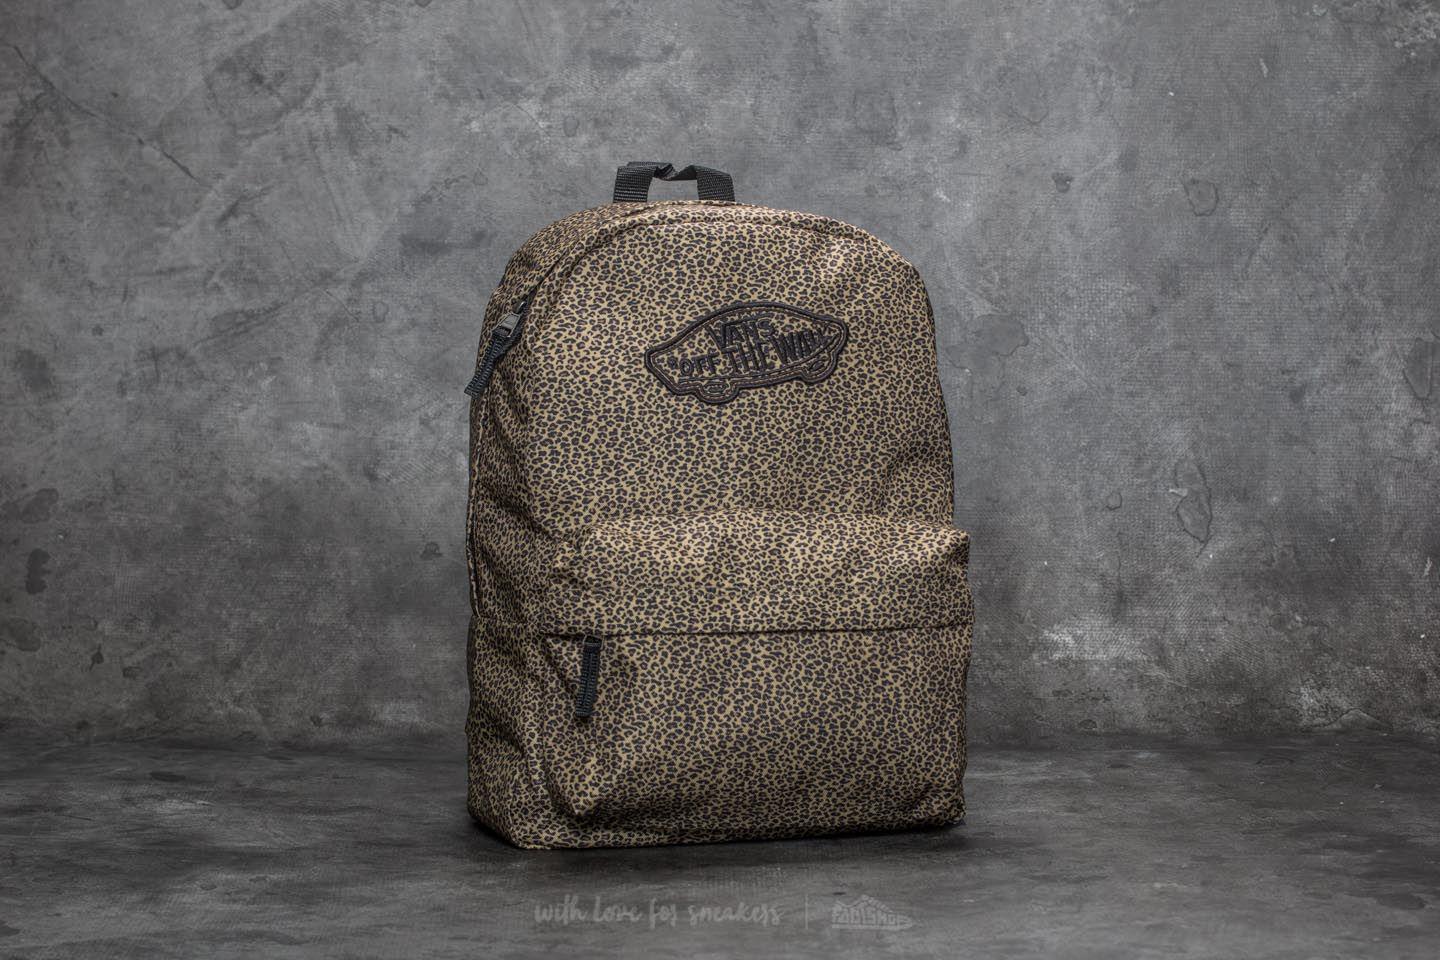 vans cheetah print backpack